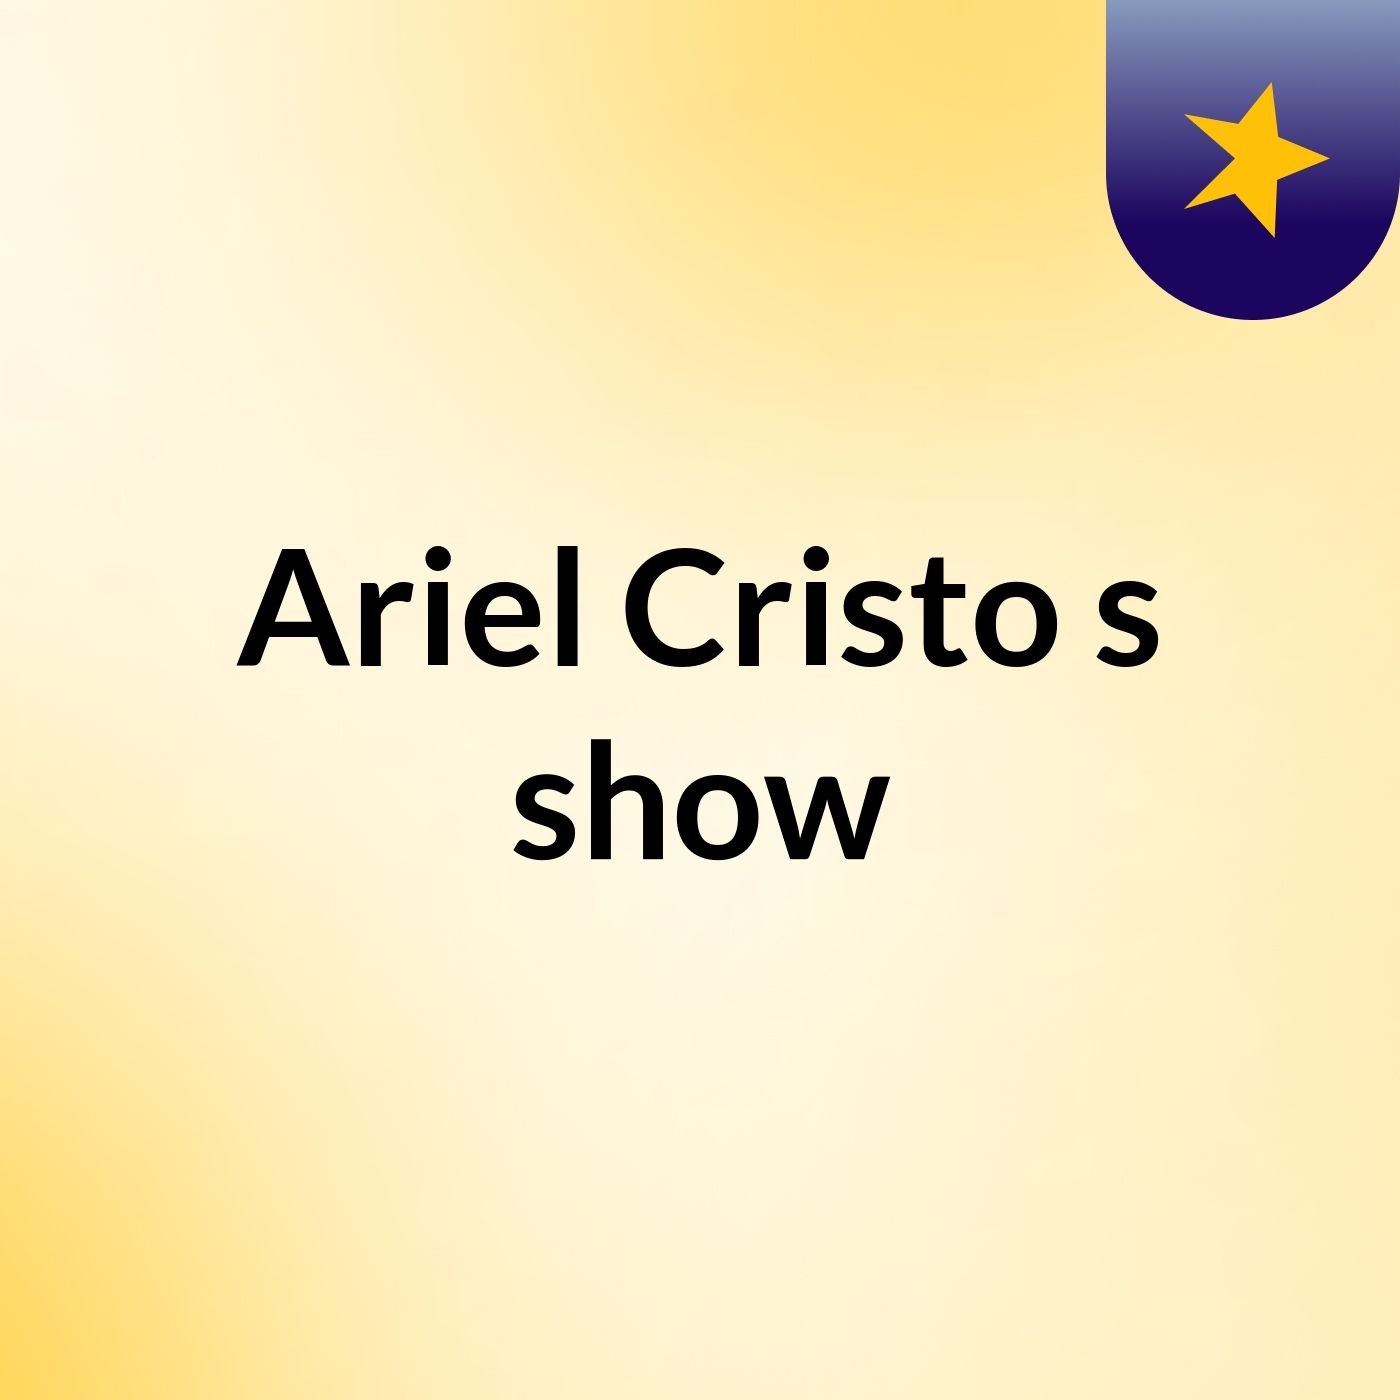 Ariel Cristo's show